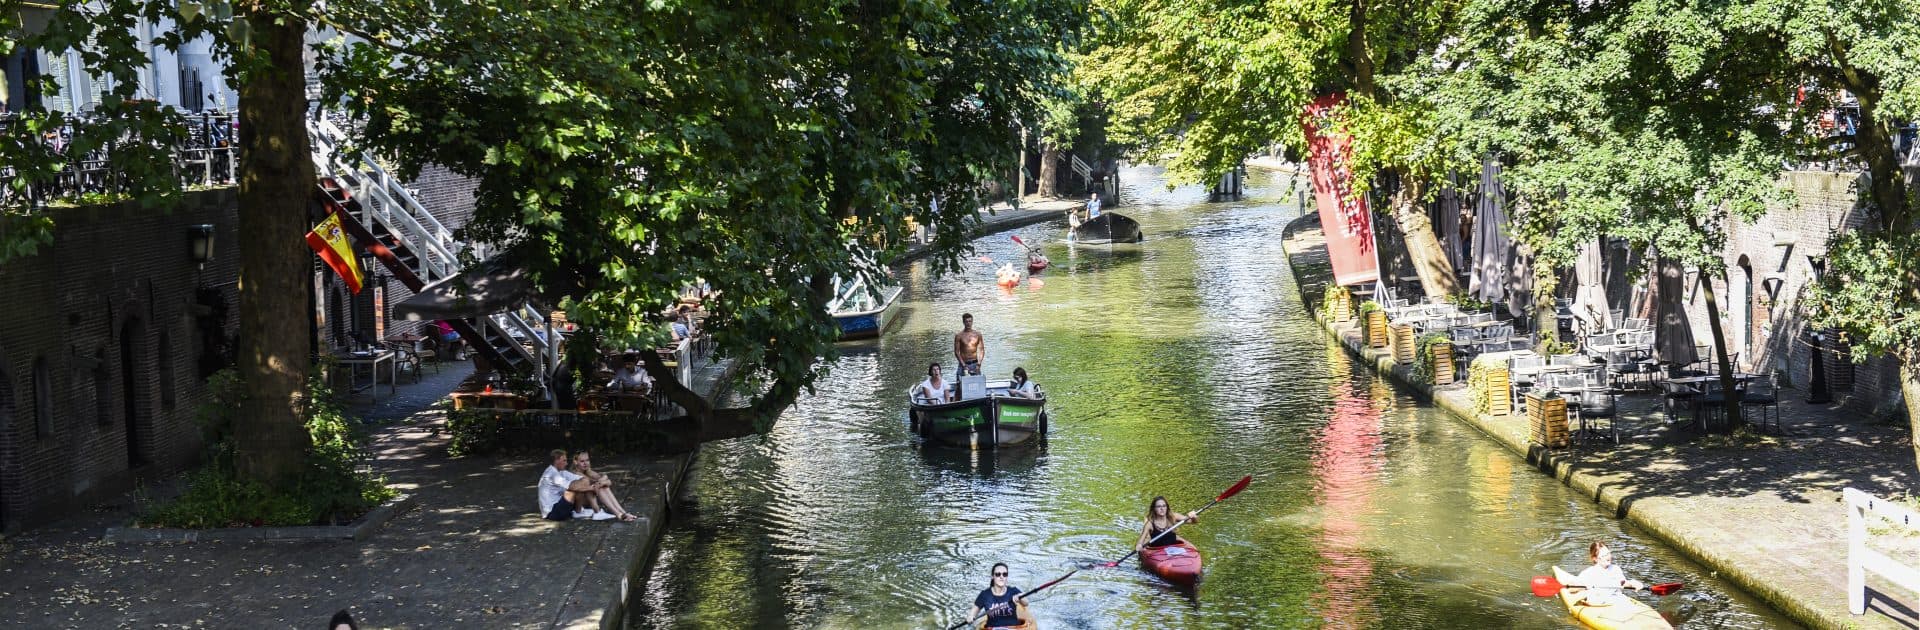 Oude Gracht, roeien, Utrecht ontdekken, kanoe, bootjes, luieren